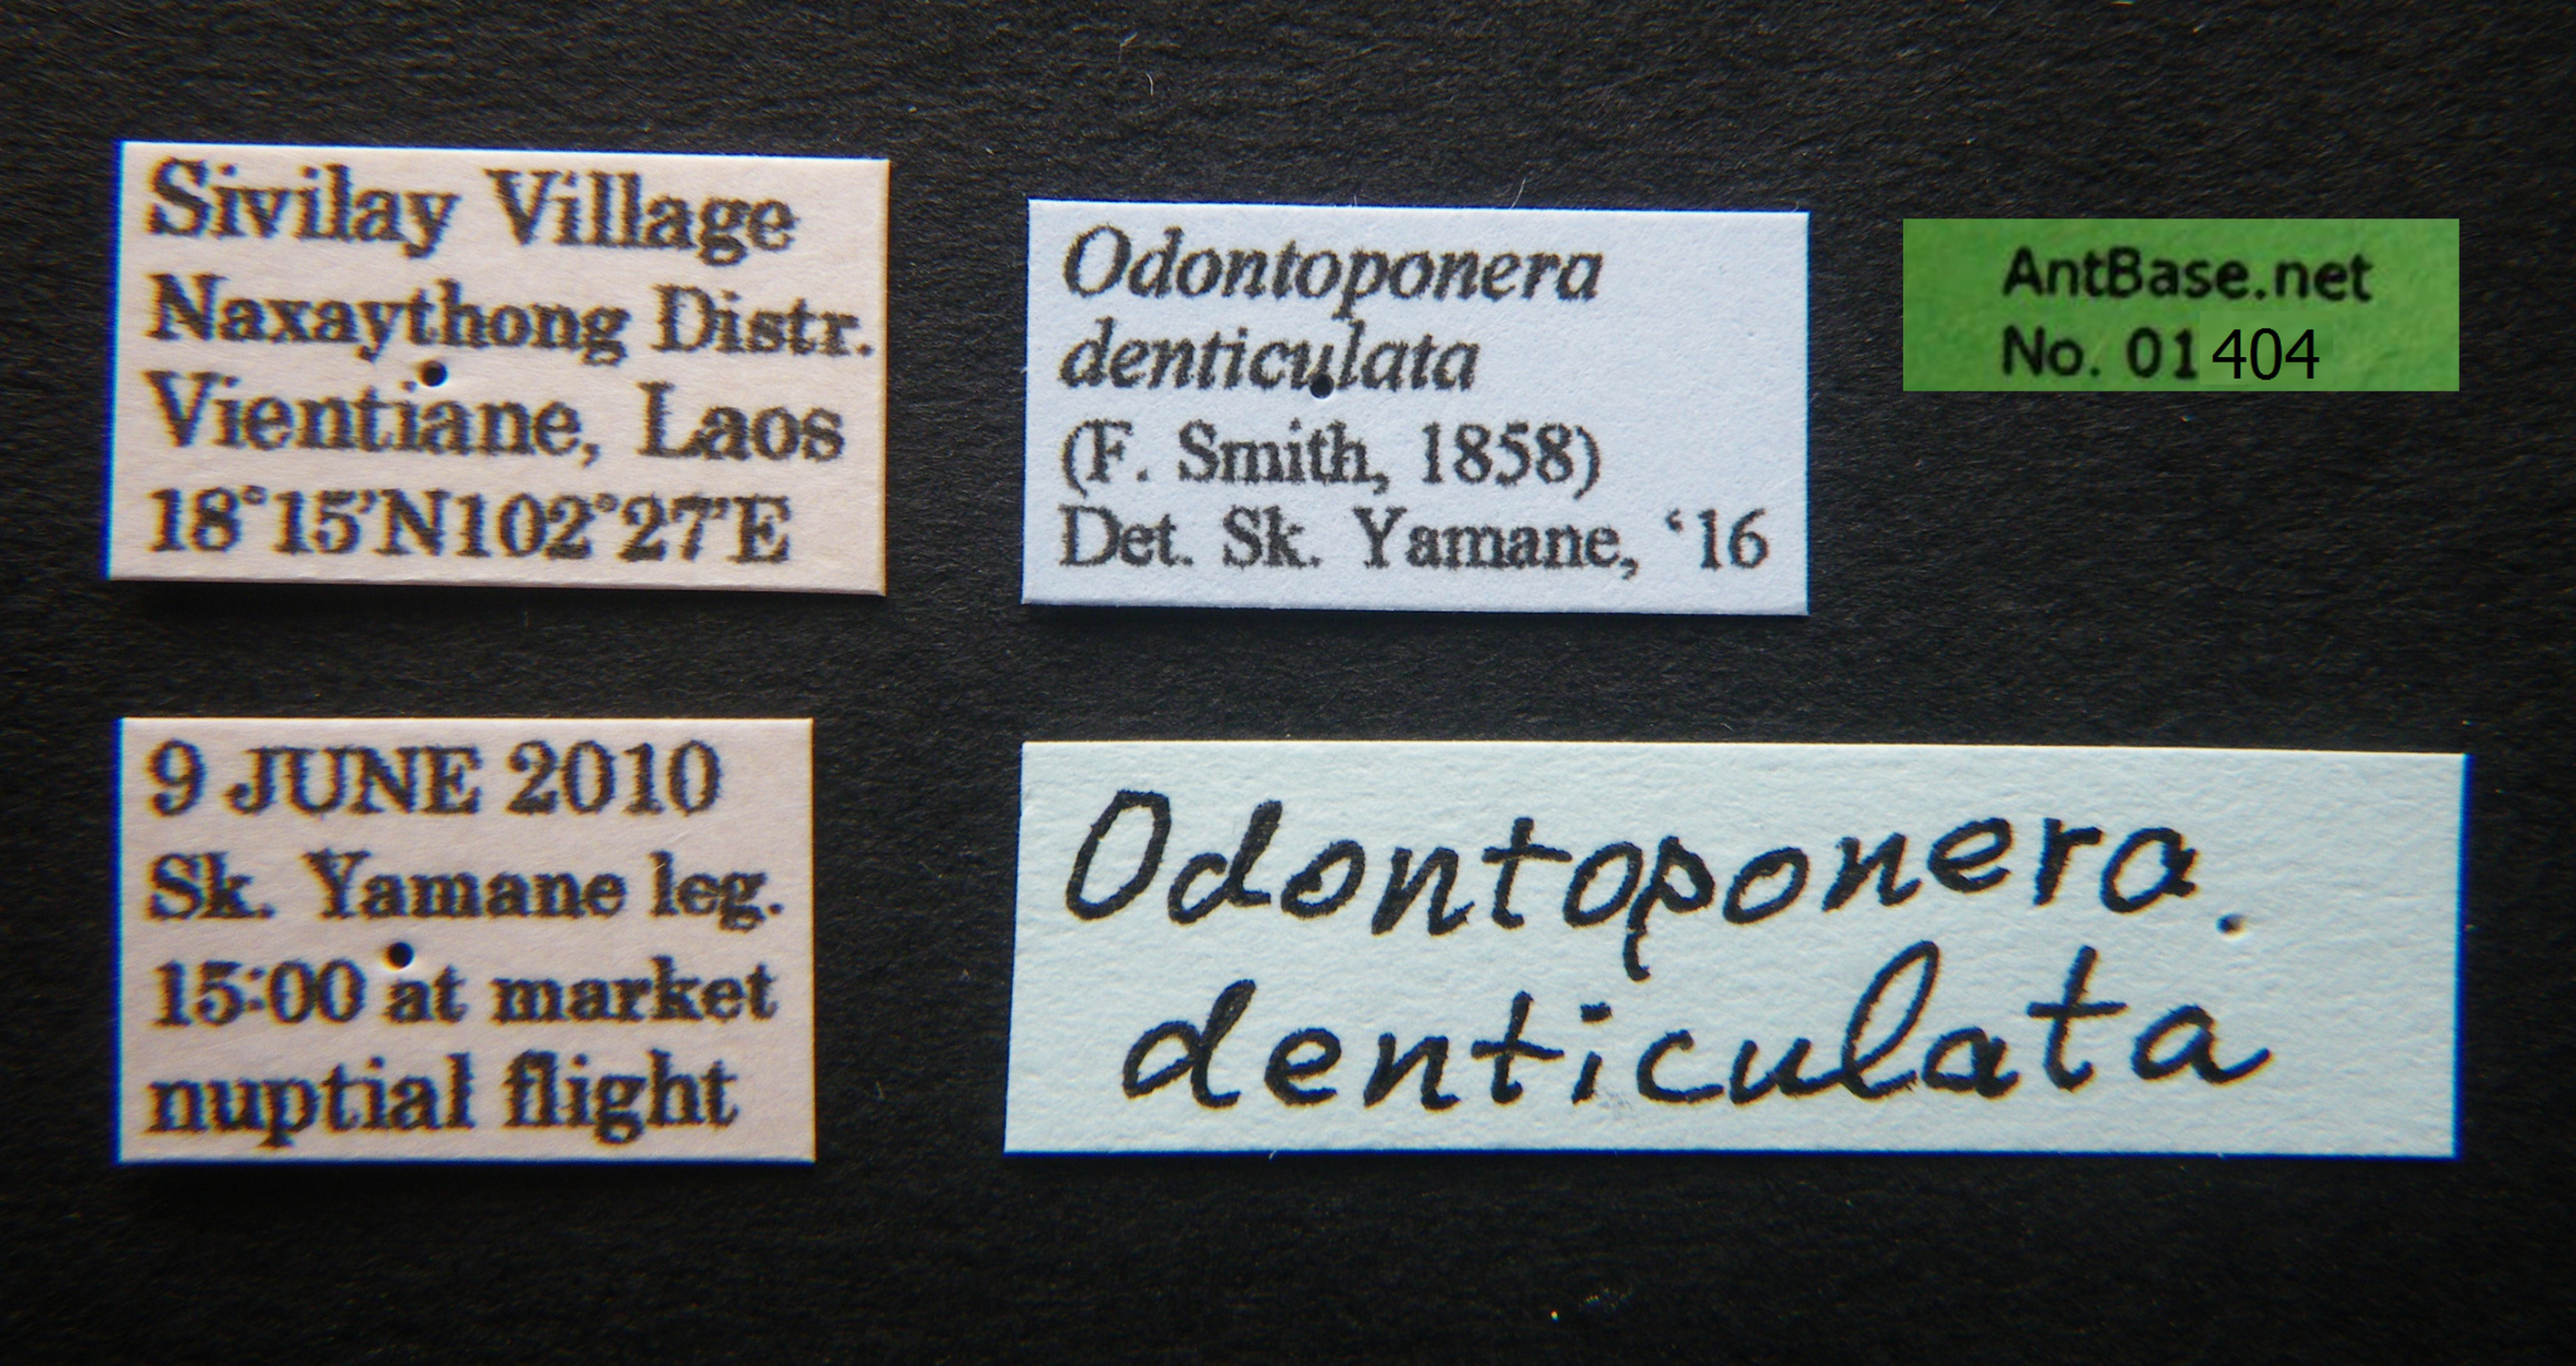 Foto Odontoponera denticulata Smith, 1858 Label